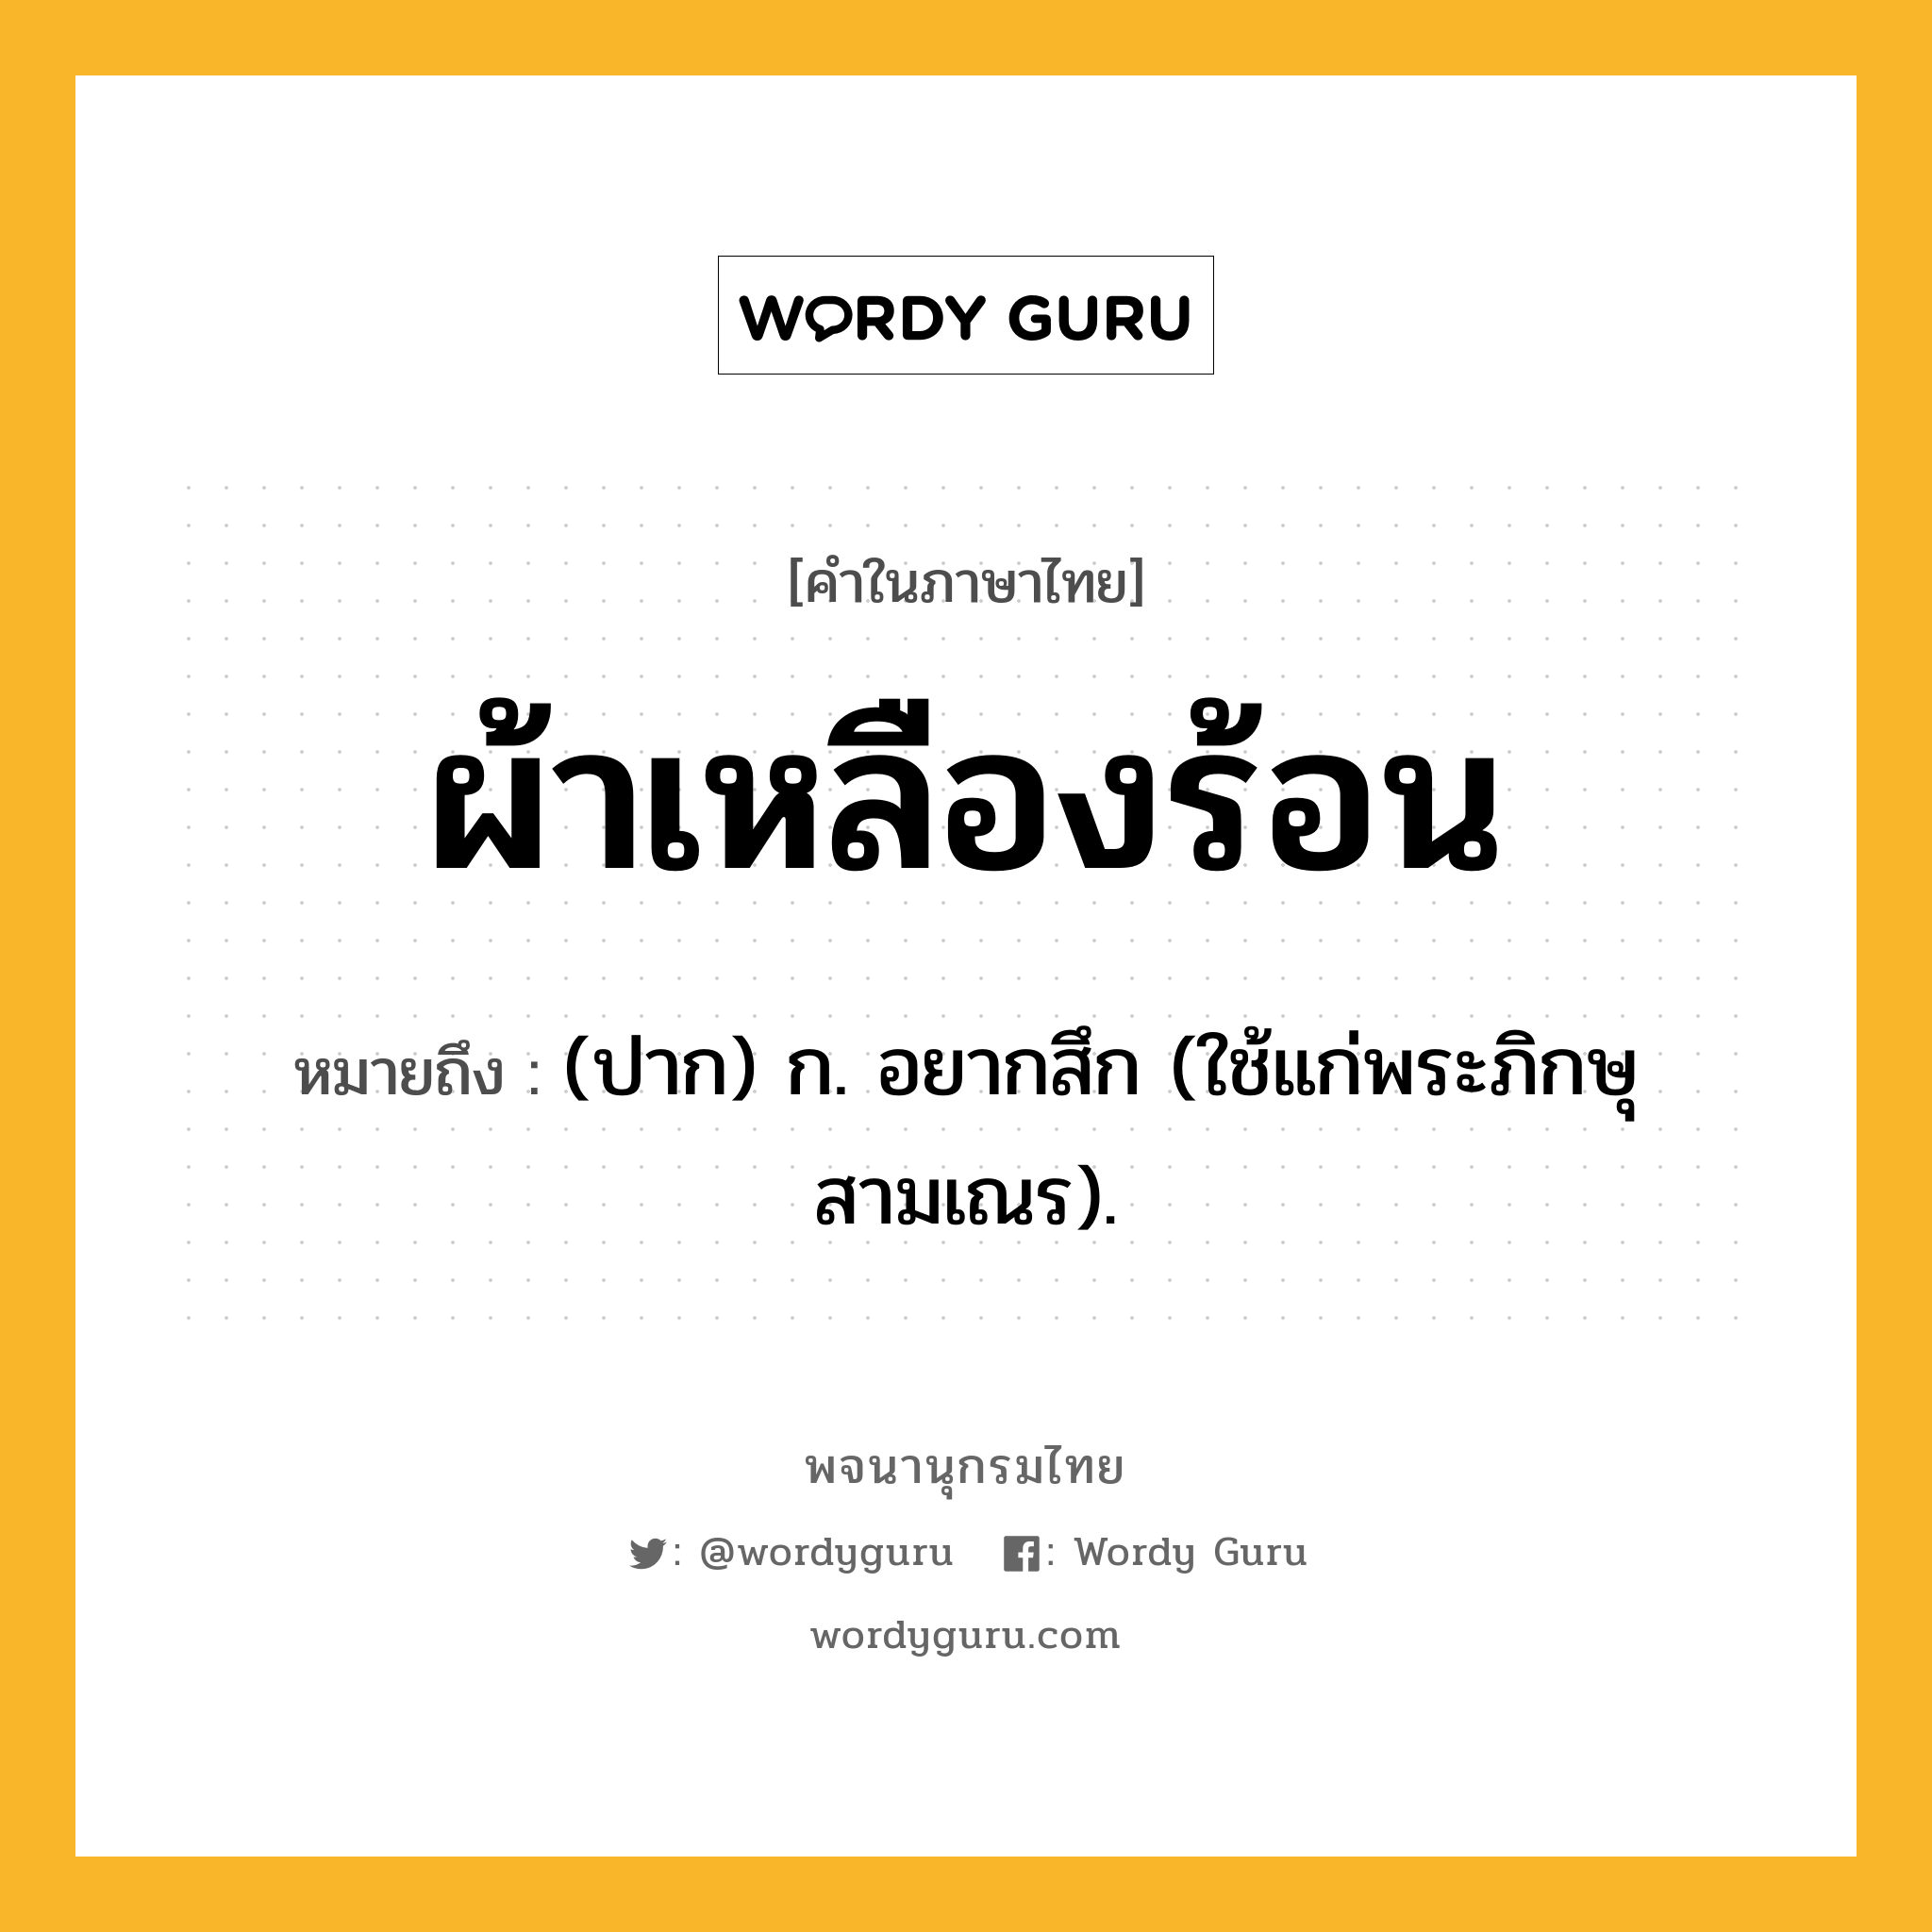 ผ้าเหลืองร้อน ความหมาย หมายถึงอะไร?, คำในภาษาไทย ผ้าเหลืองร้อน หมายถึง (ปาก) ก. อยากสึก (ใช้แก่พระภิกษุสามเณร).